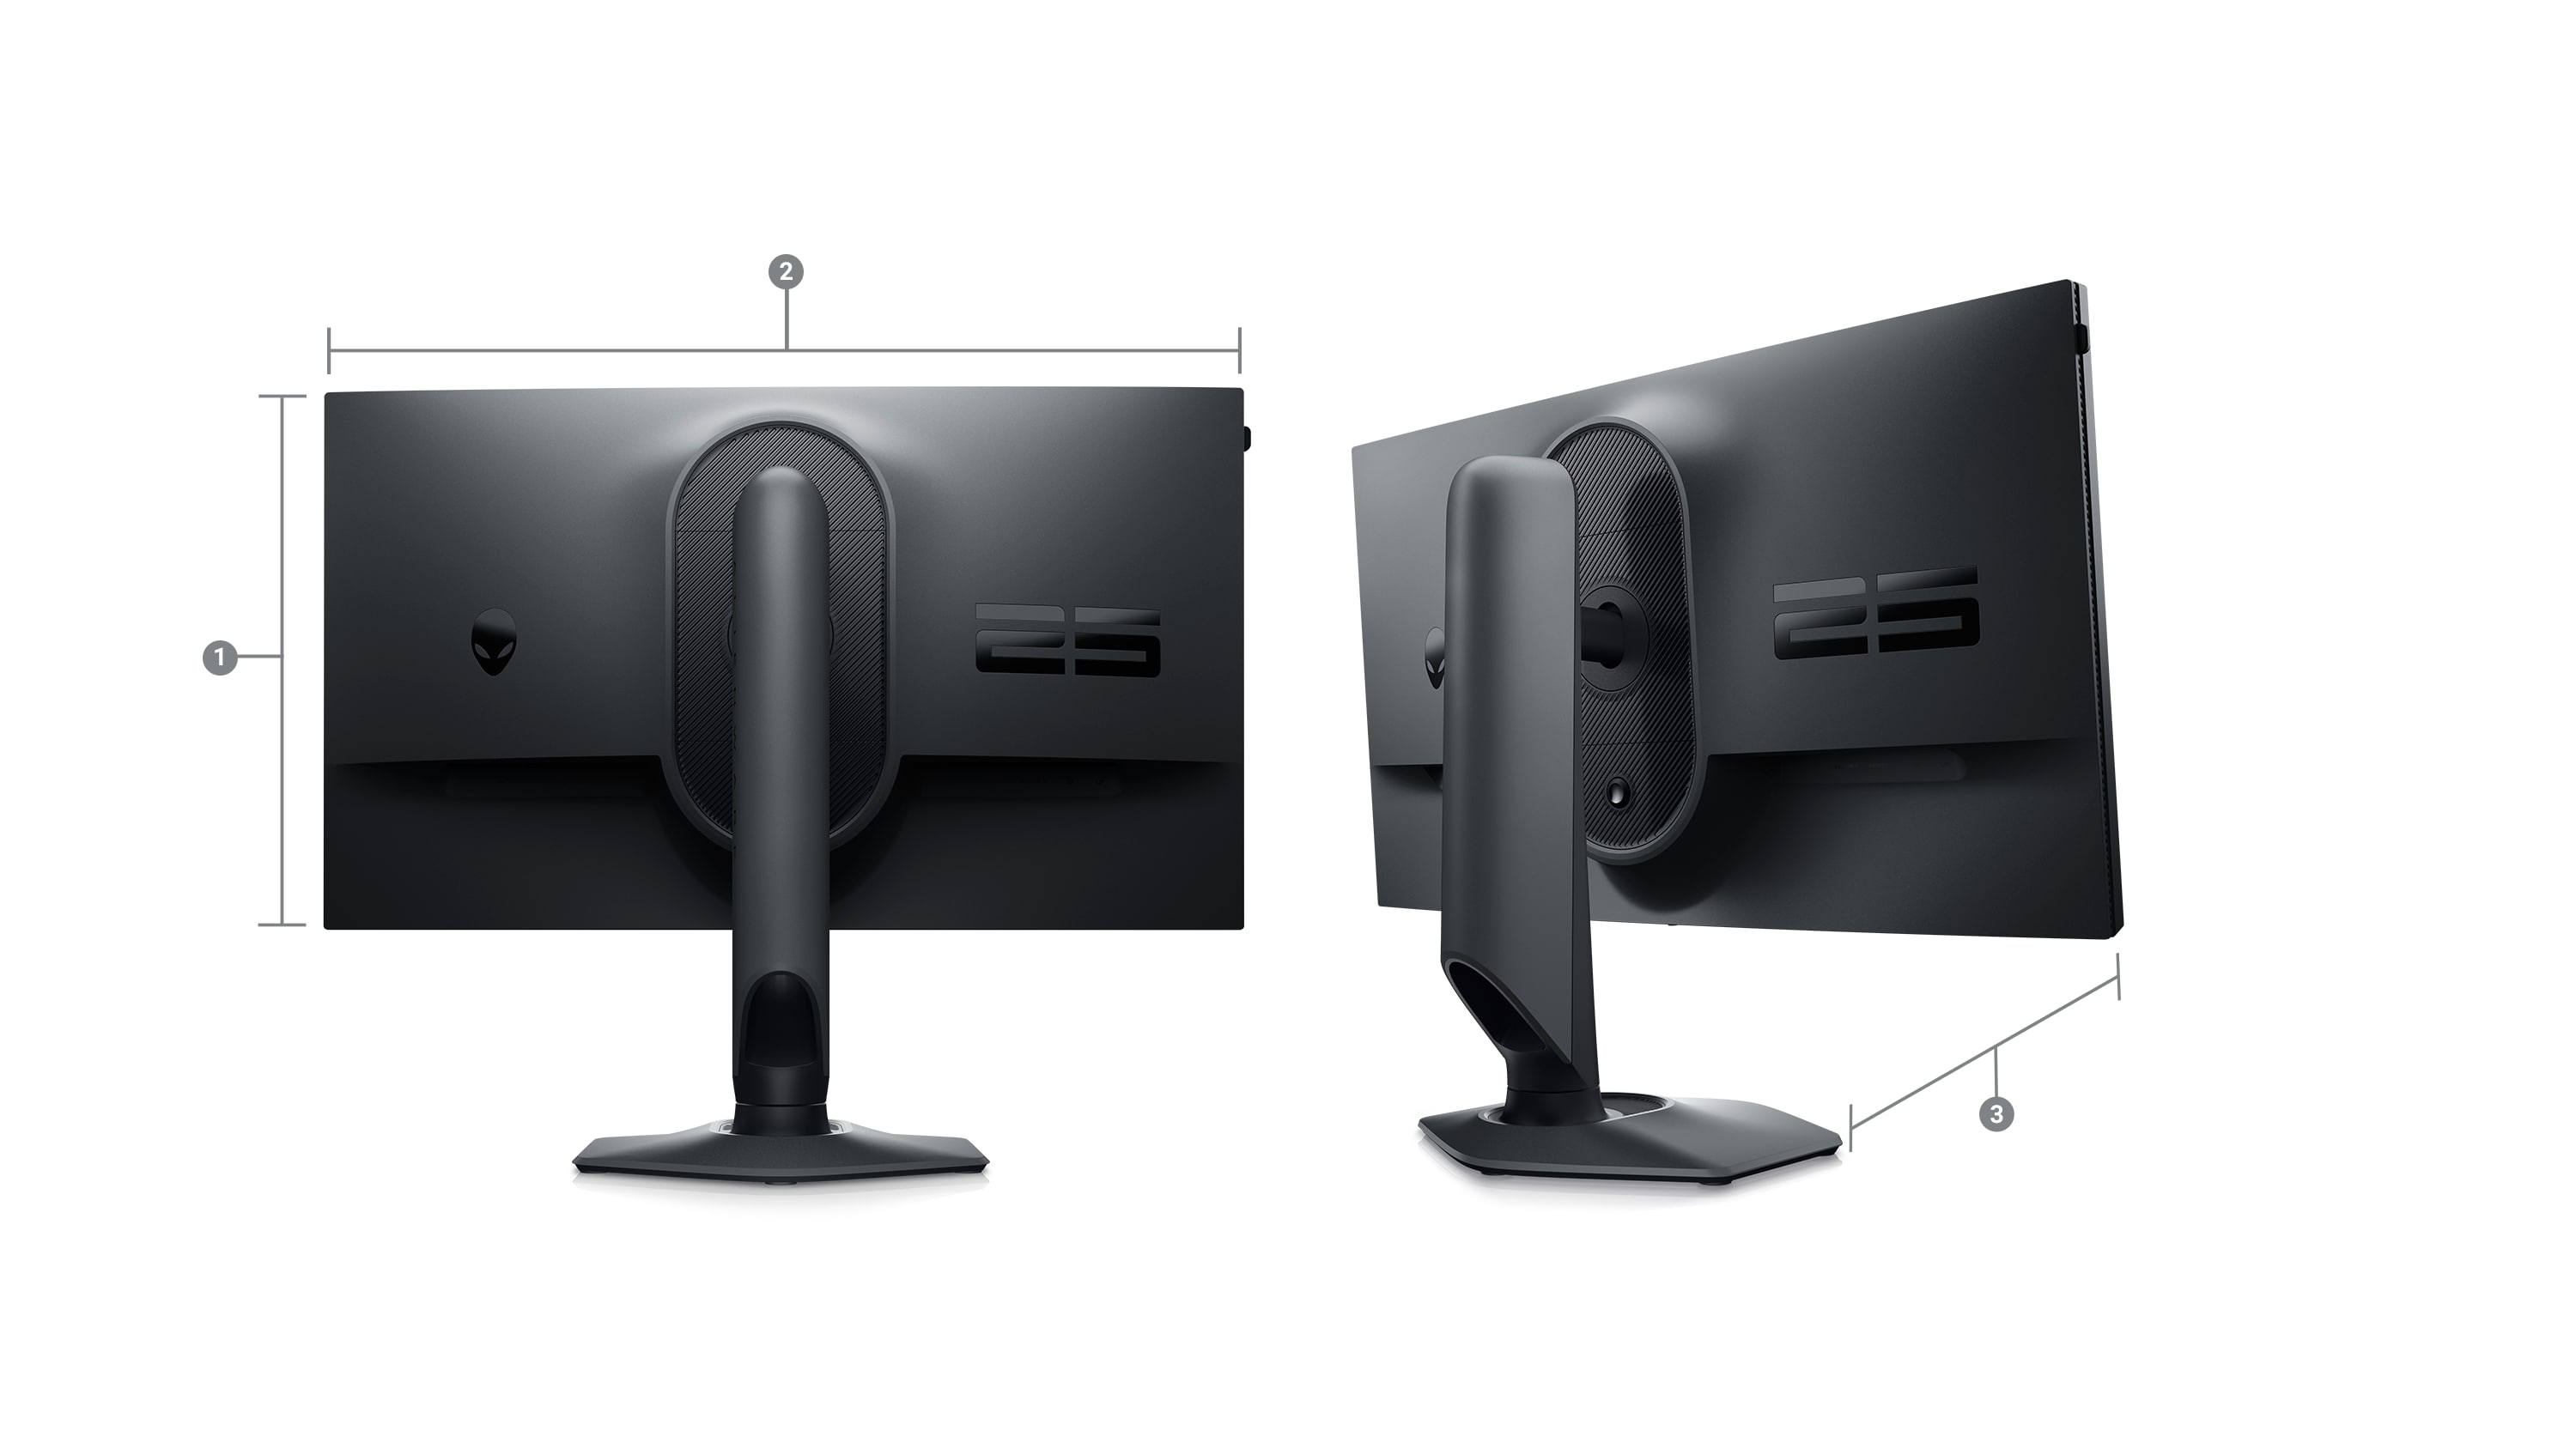 Obraz dwóch monitorów do gier Dell AW2523HF z liczbami od 1 do 3 sygnalizujących wymiary i wagę produktu.